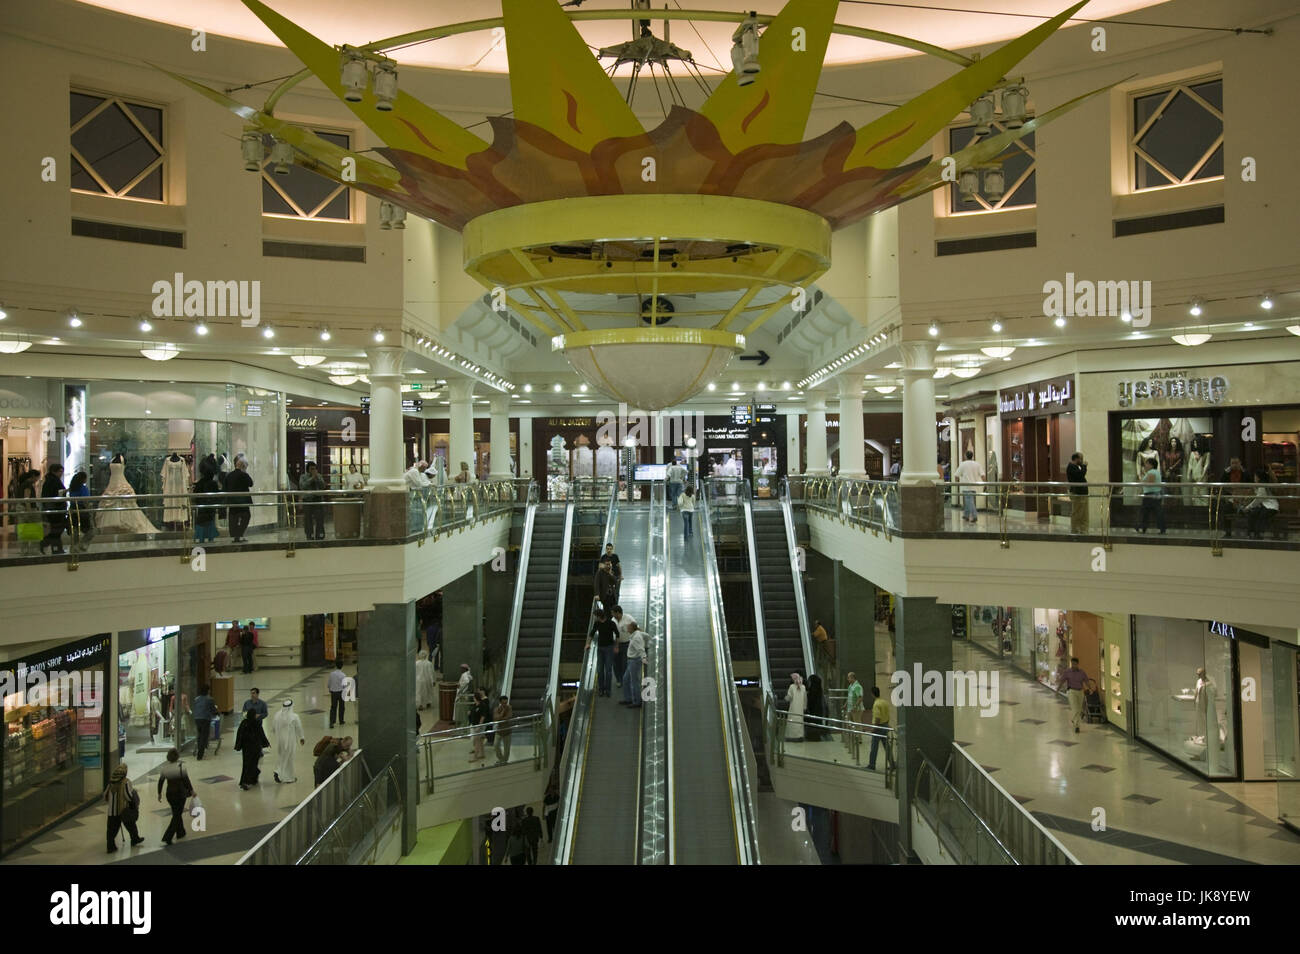 Vereinigte Arabische Emirate, Dubai, Deira, Einkaufszentrum, Stock Photo